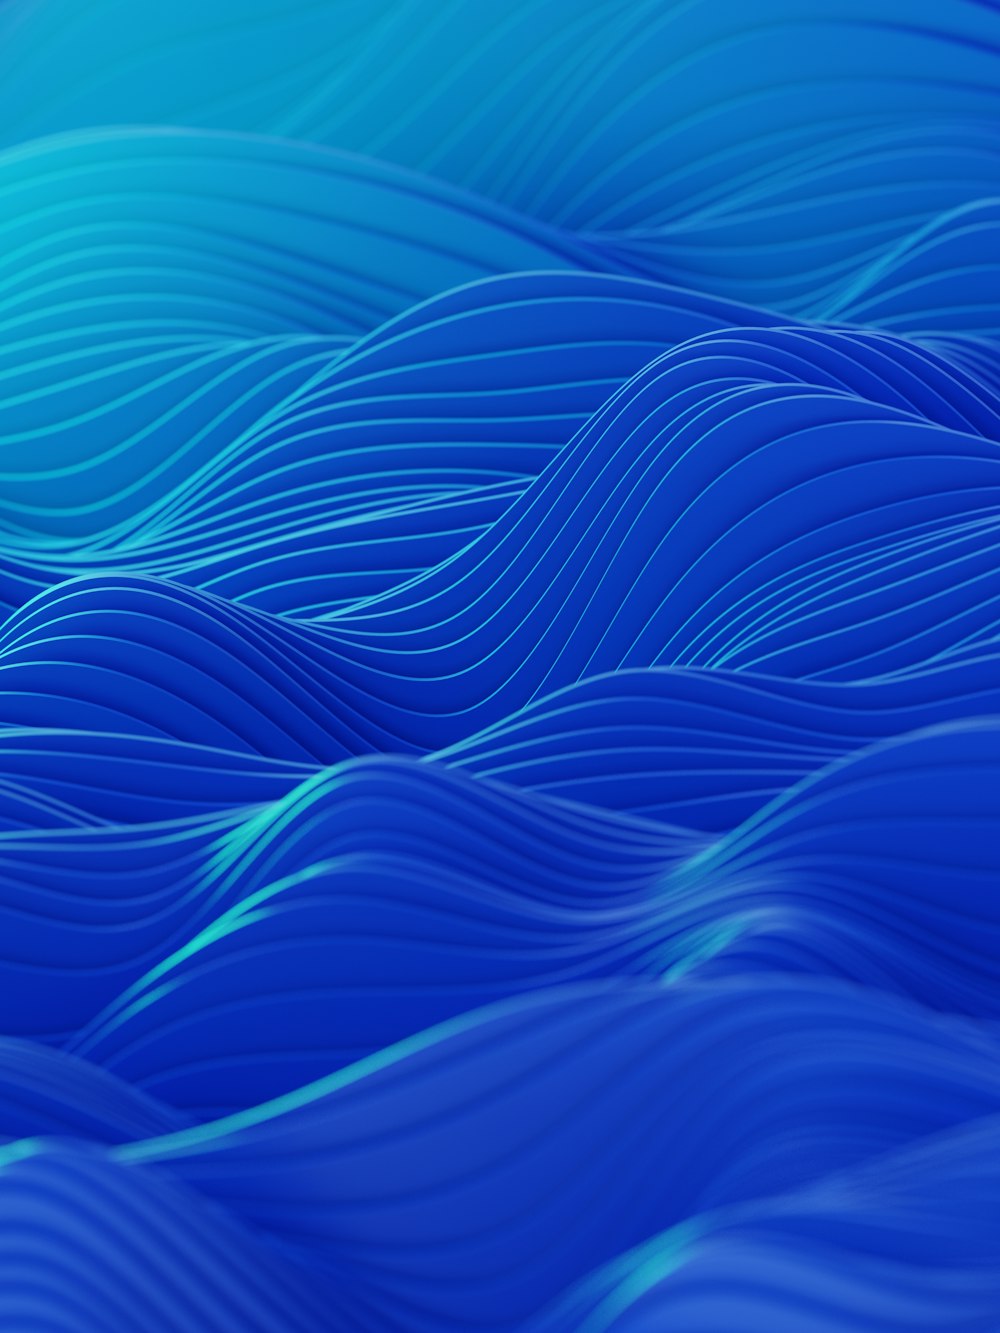 um fundo azul abstrato com linhas onduladas